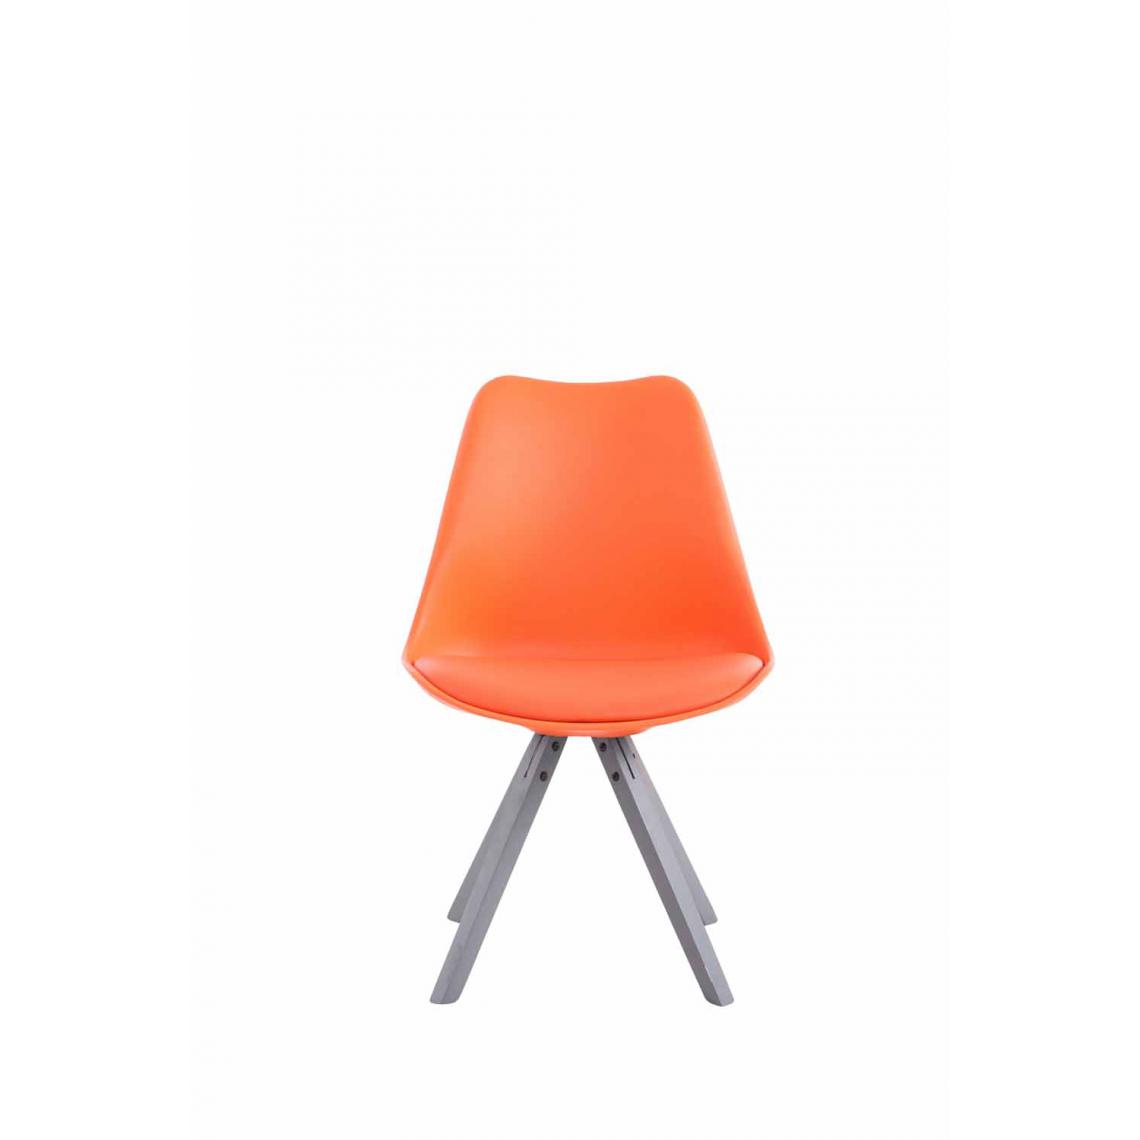 Icaverne - sublime Chaise visiteur gamme Katmandou cuir synthétique Carré gris couleur Orange - Chaises